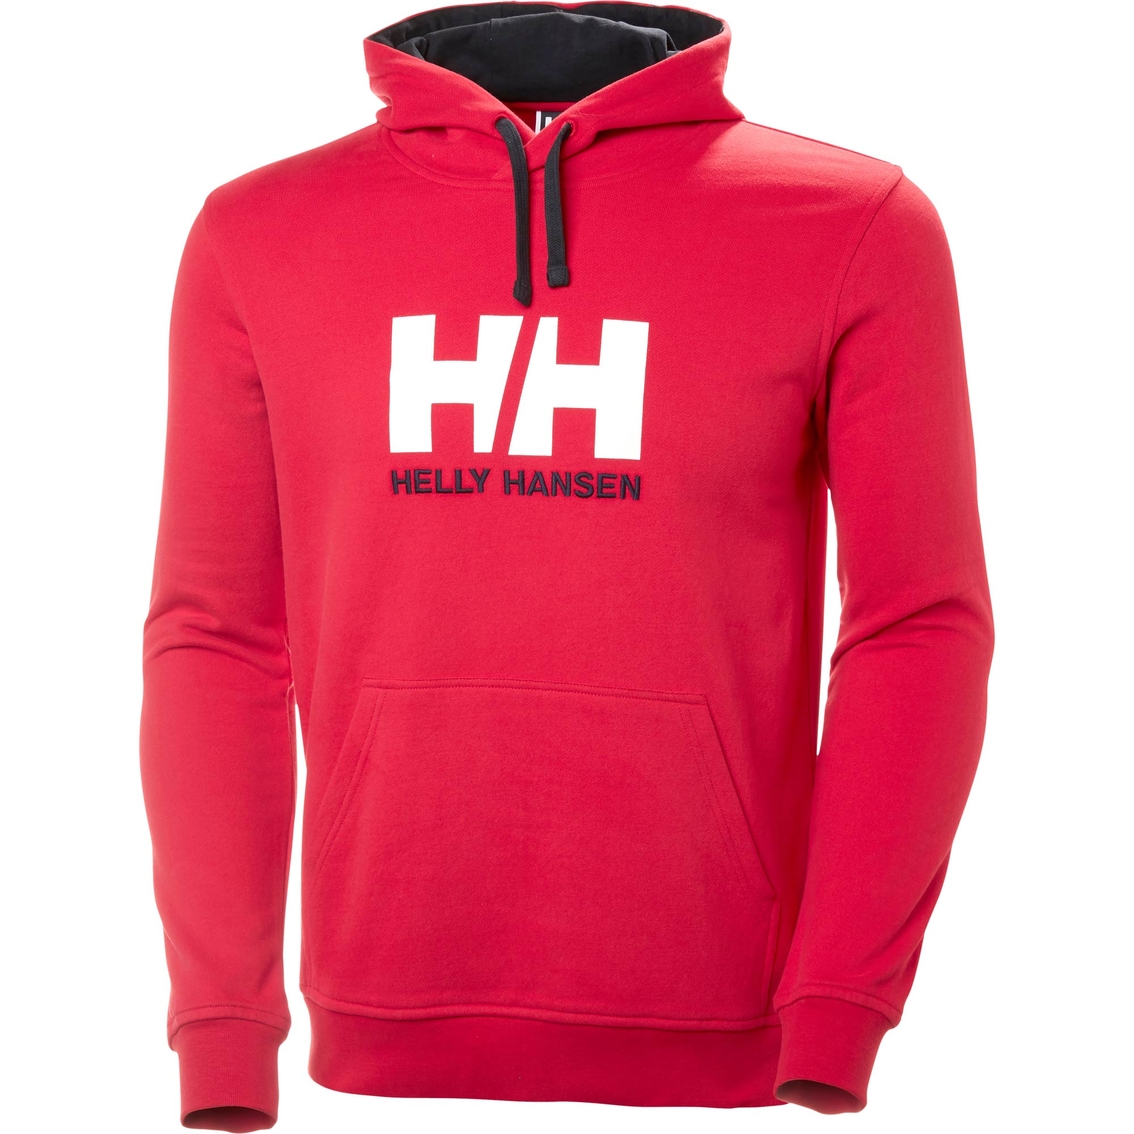 Helly Hansen Logo Hoodie - Image 3 of 4